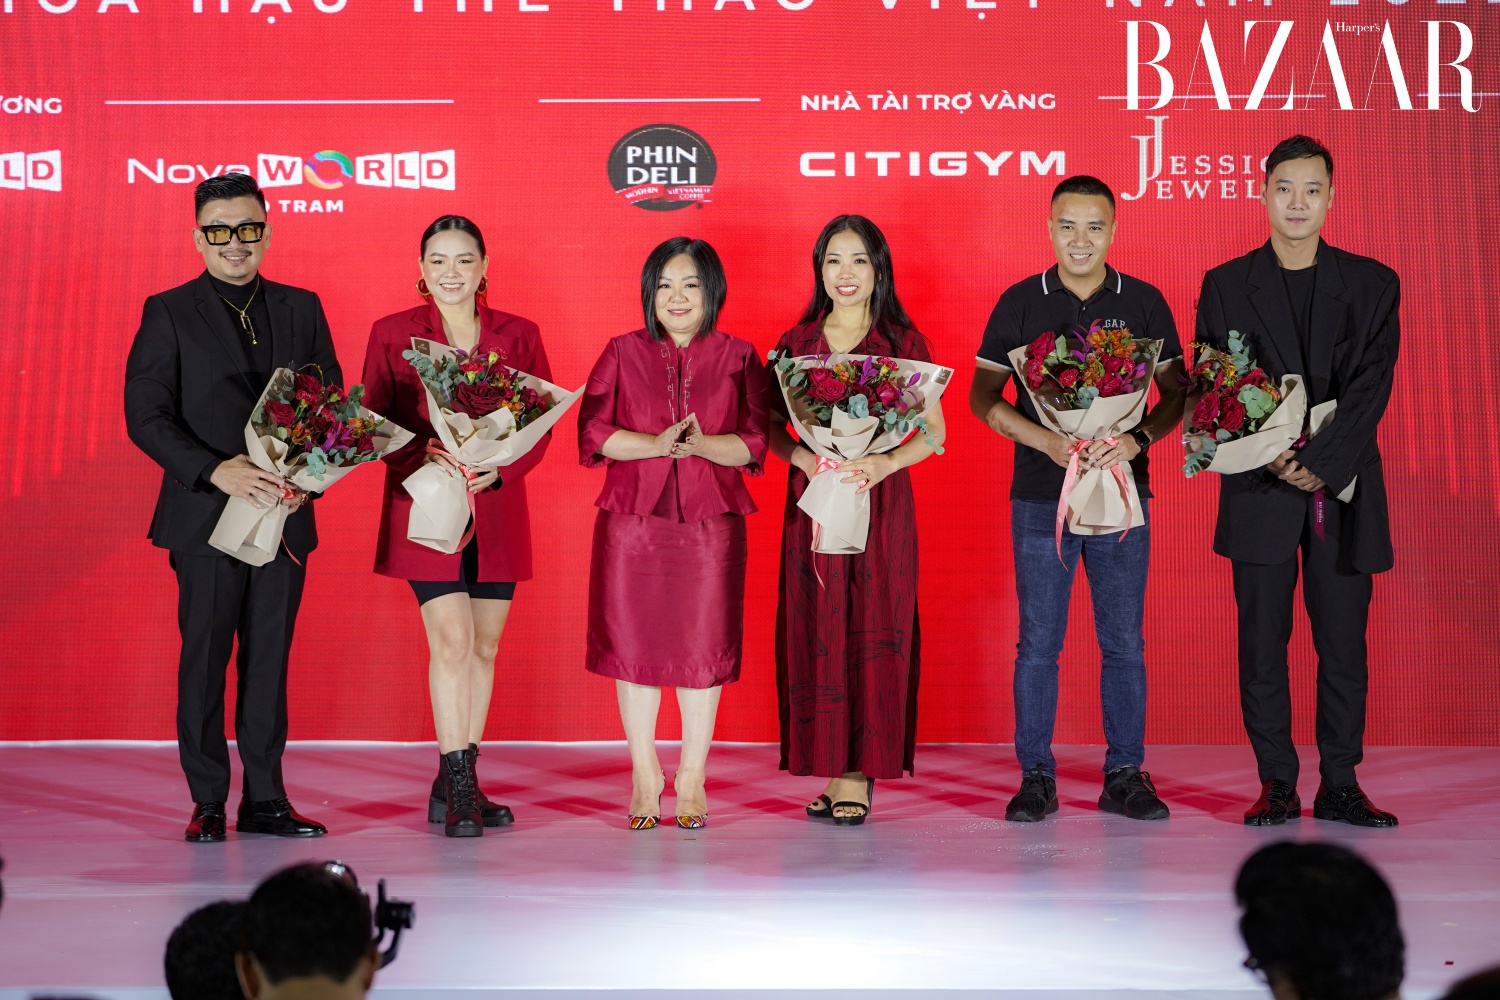 BZ hoa hau the thao Viet Nam 1 - Hoa hậu thể thao Việt Nam công bố 30 thí sinh vào chung kết